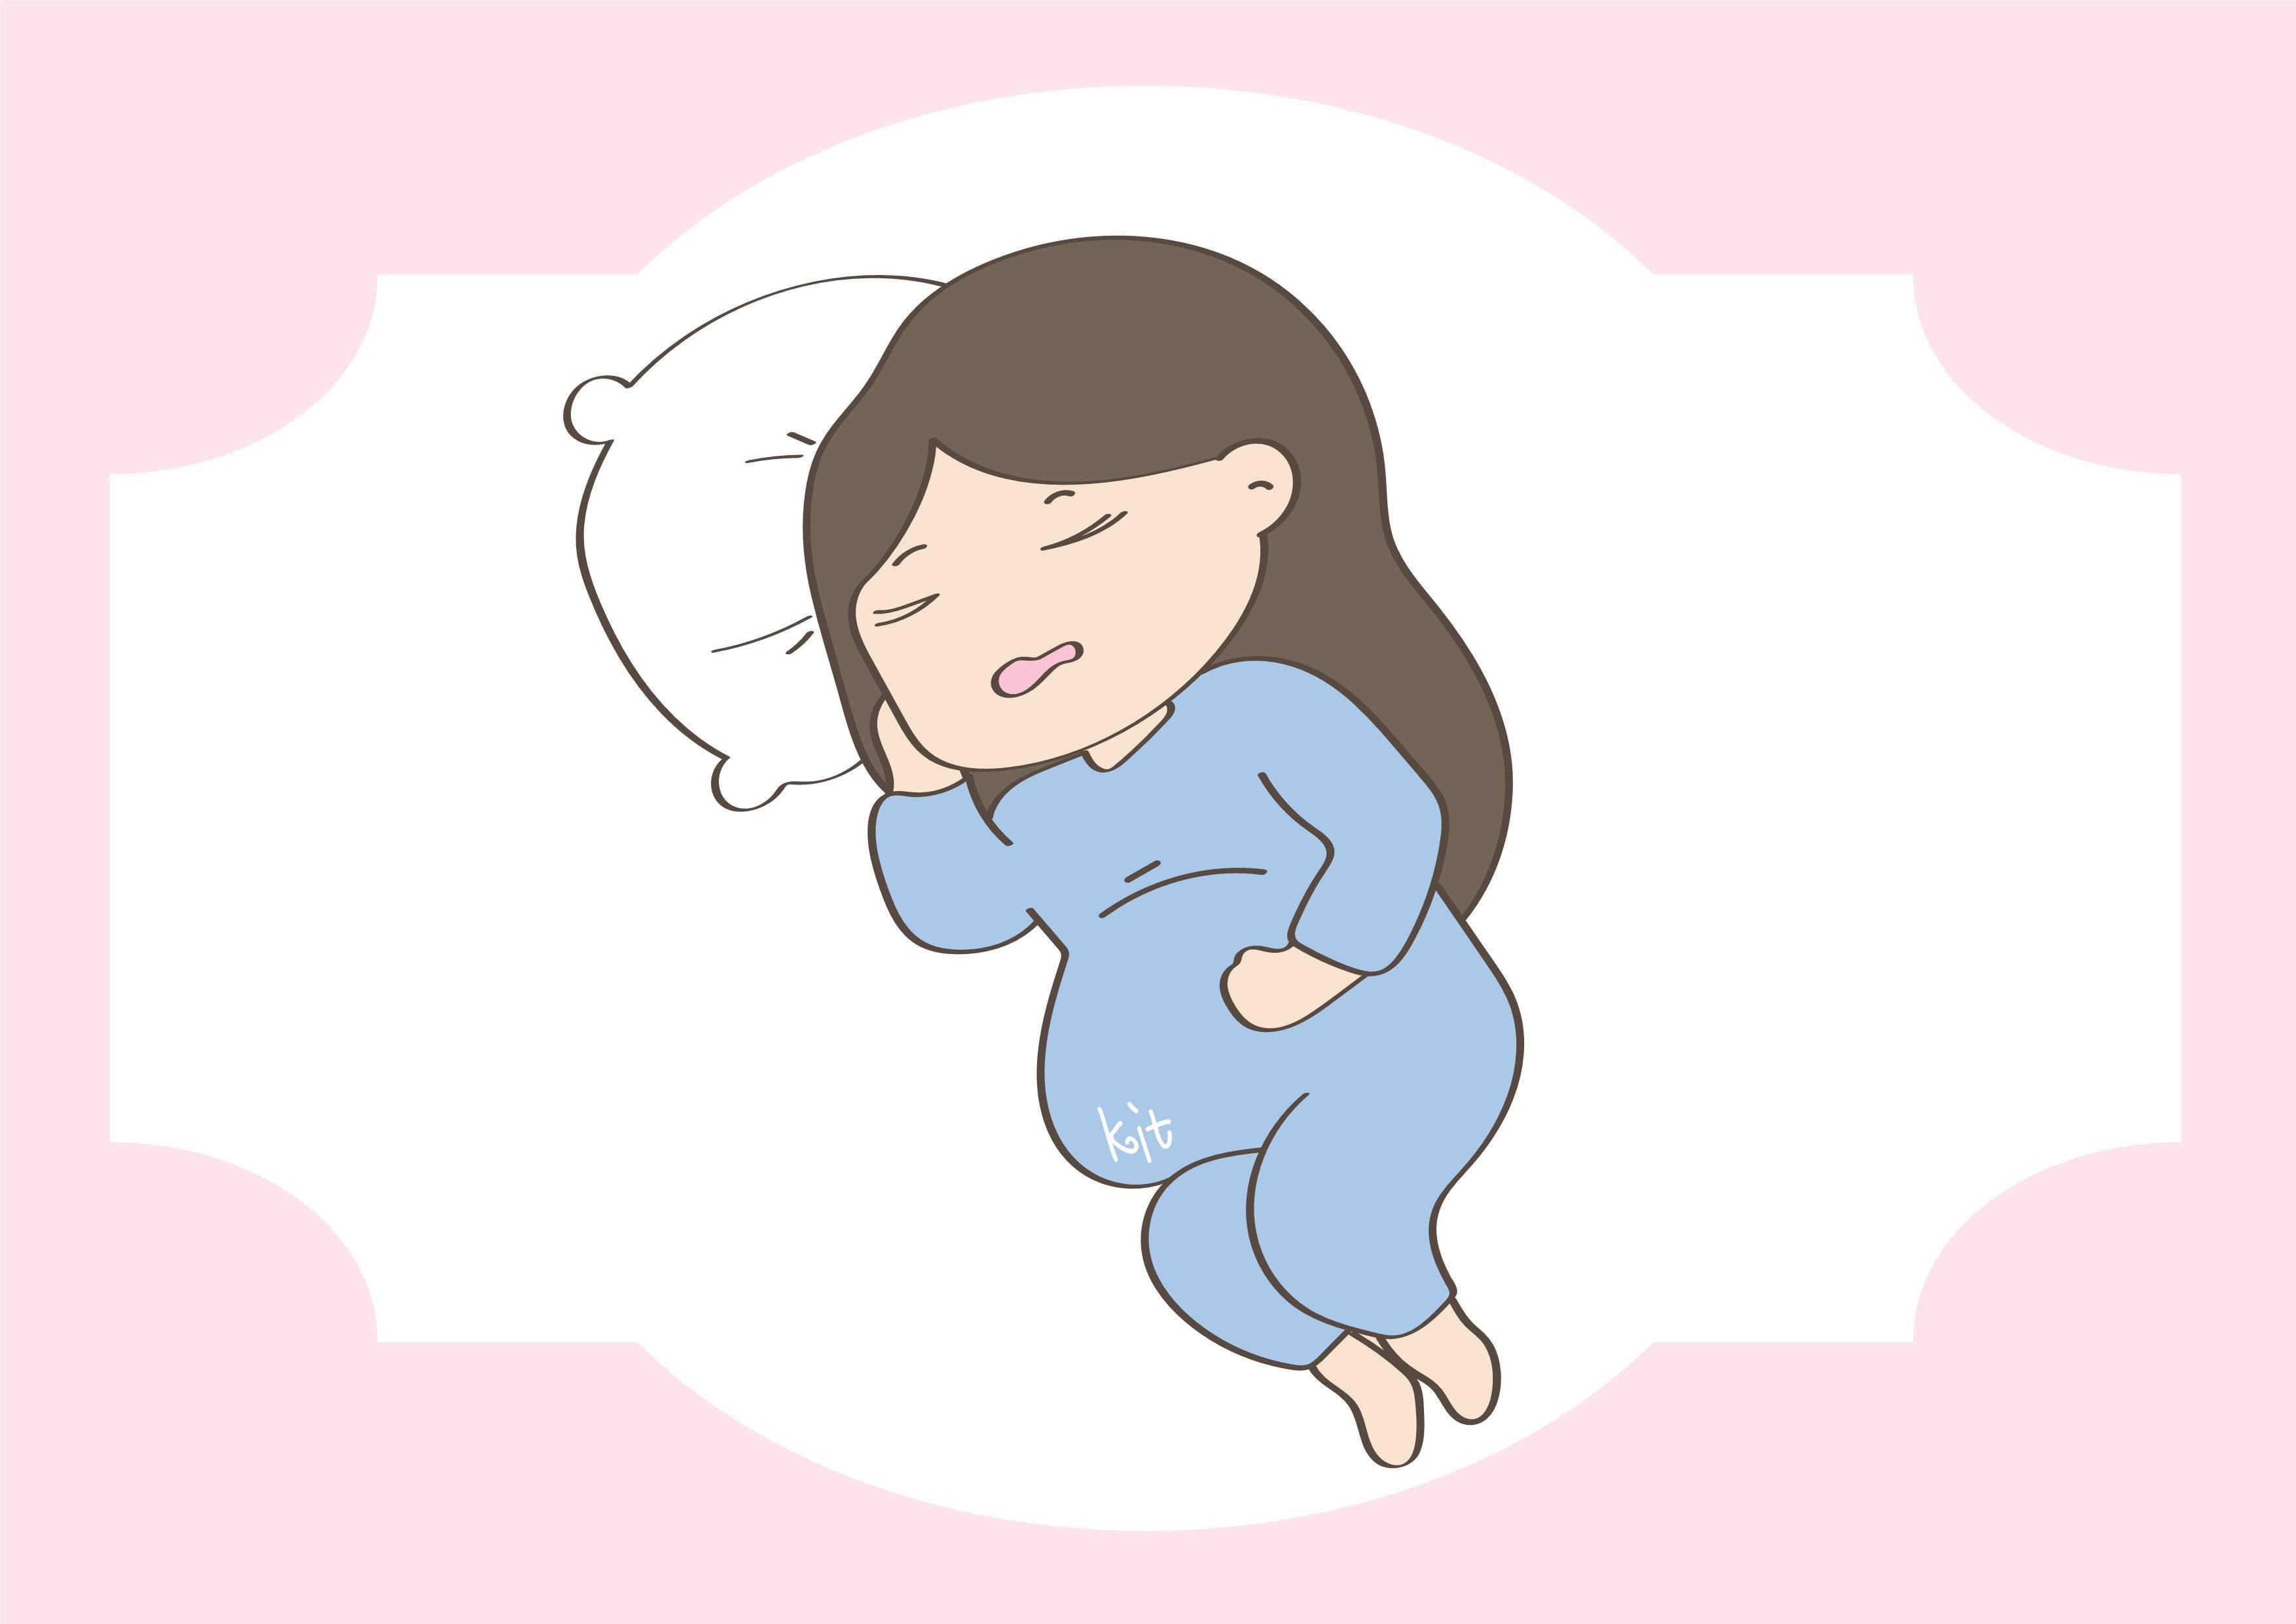 孕期这样睡,容易导致胎儿缺氧,你还敢这样操作吗?